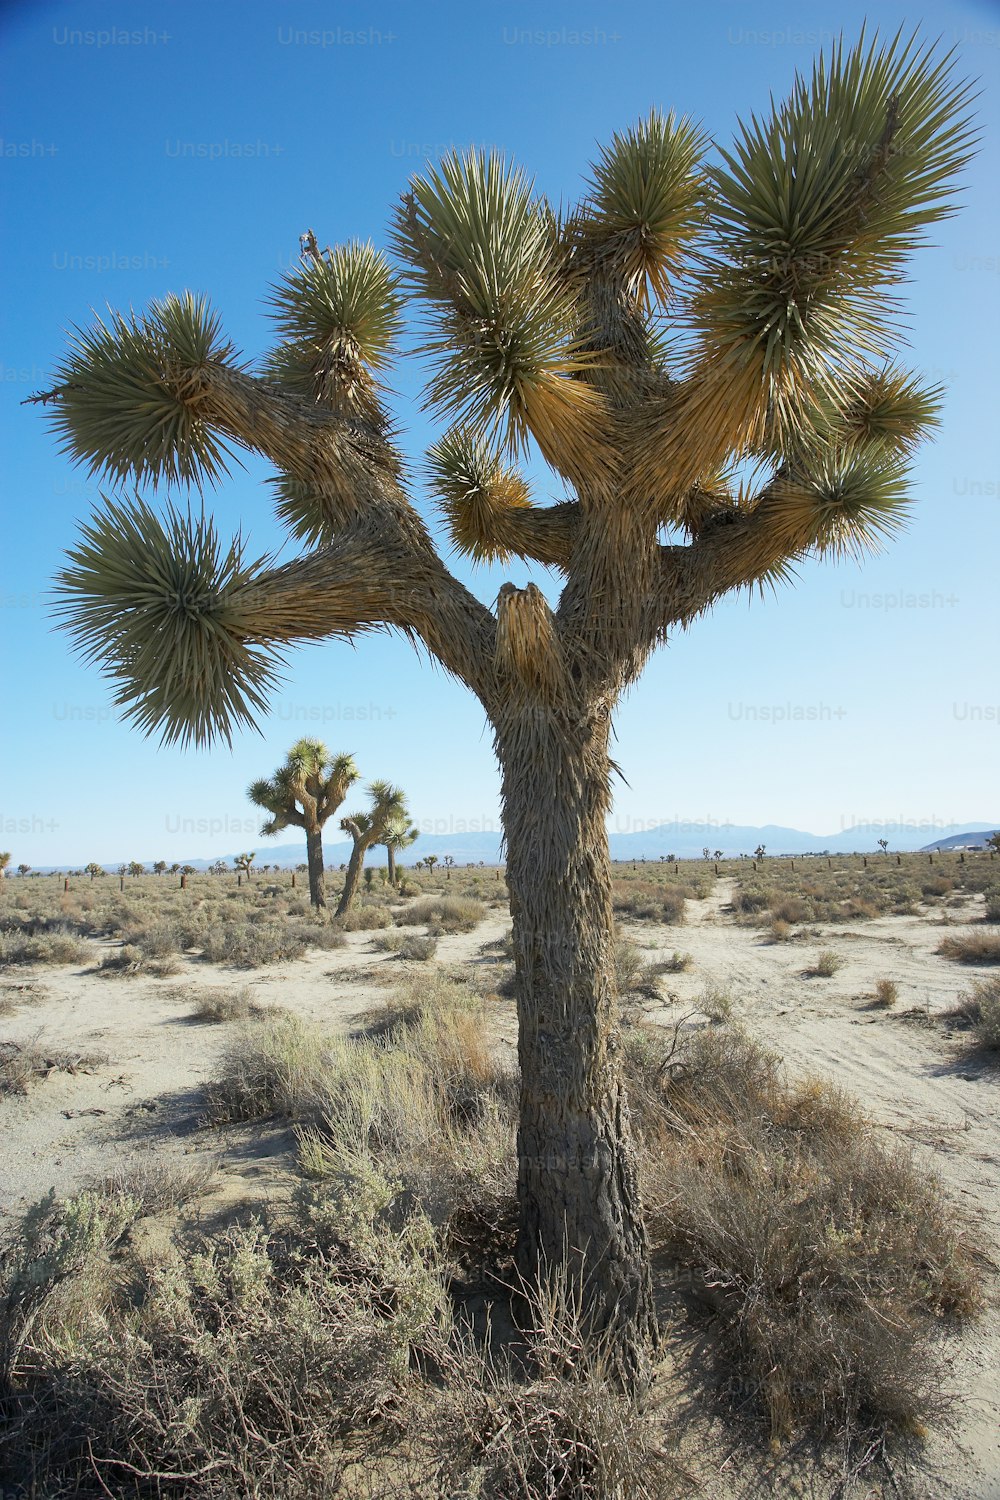 사막 한가운데에 있는 조슈아 나무